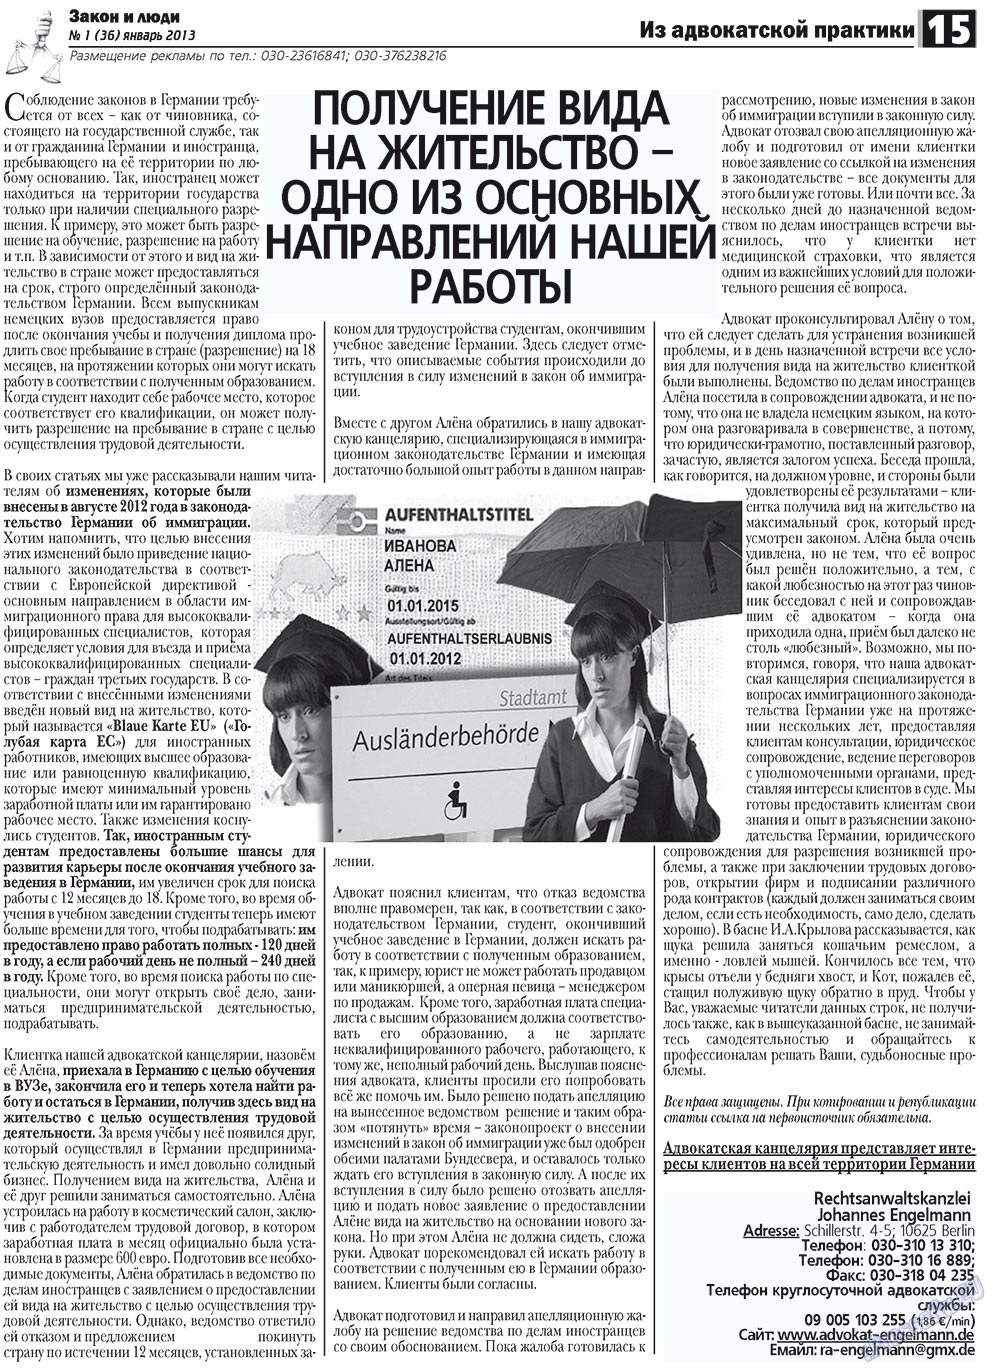 Закон и люди (газета). 2013 год, номер 1, стр. 15